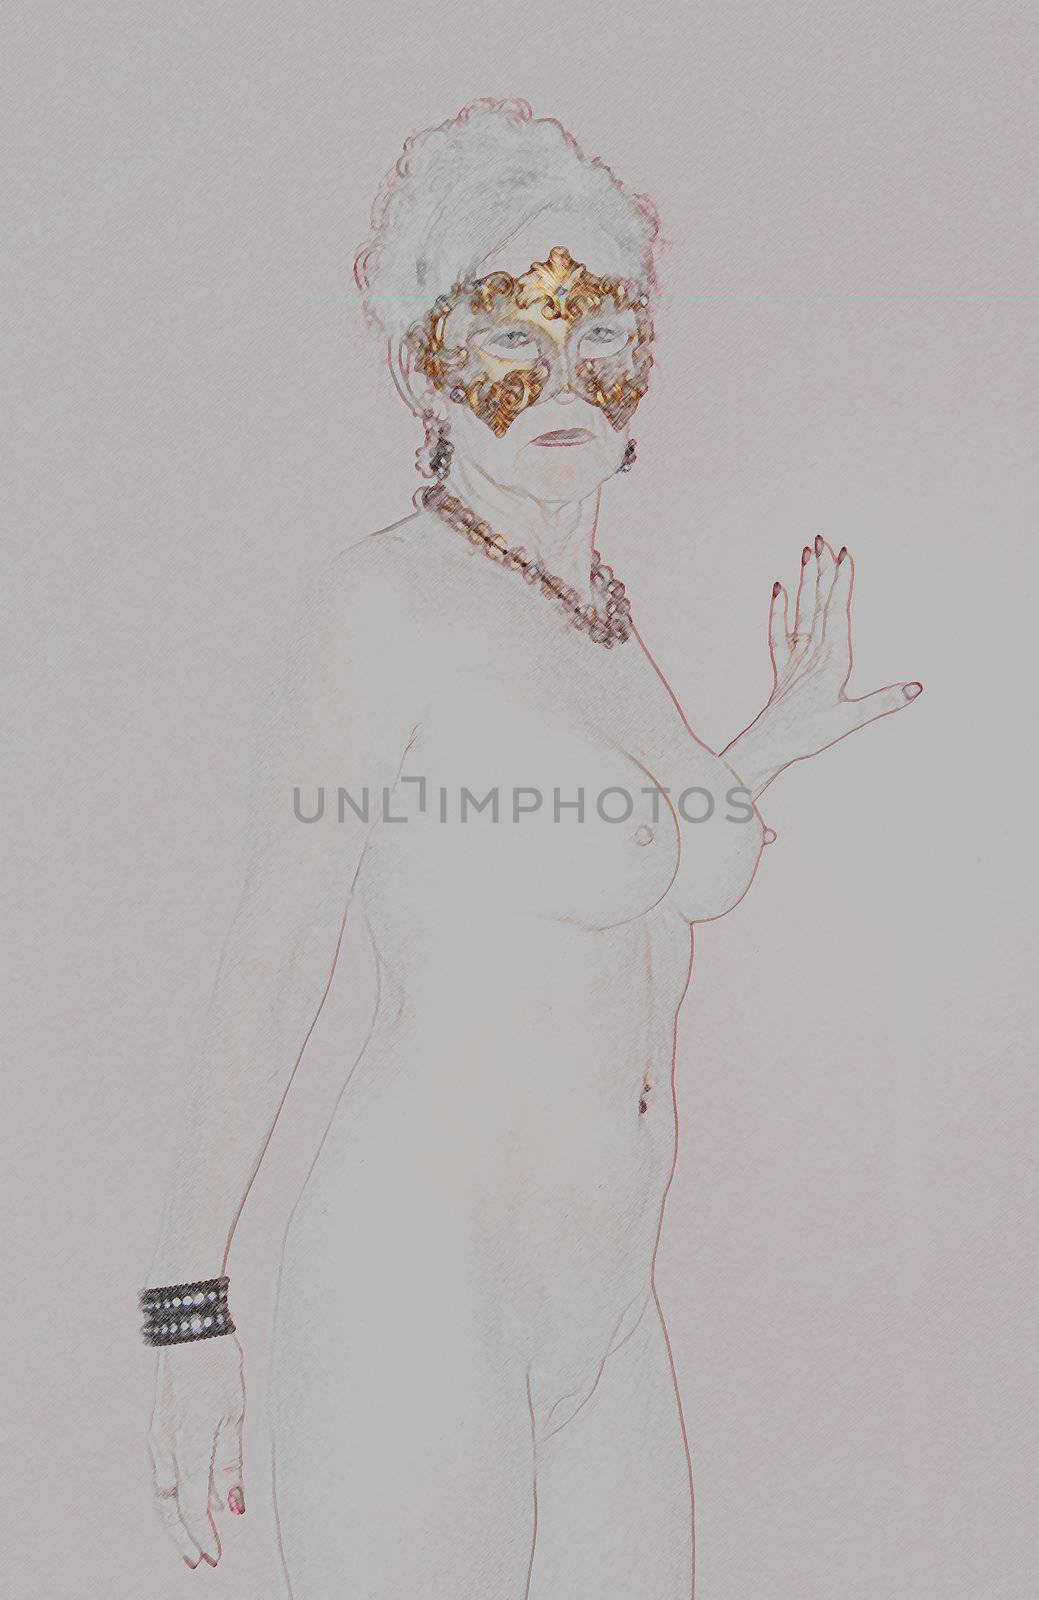 Nude woman model wearing a Venetian mask